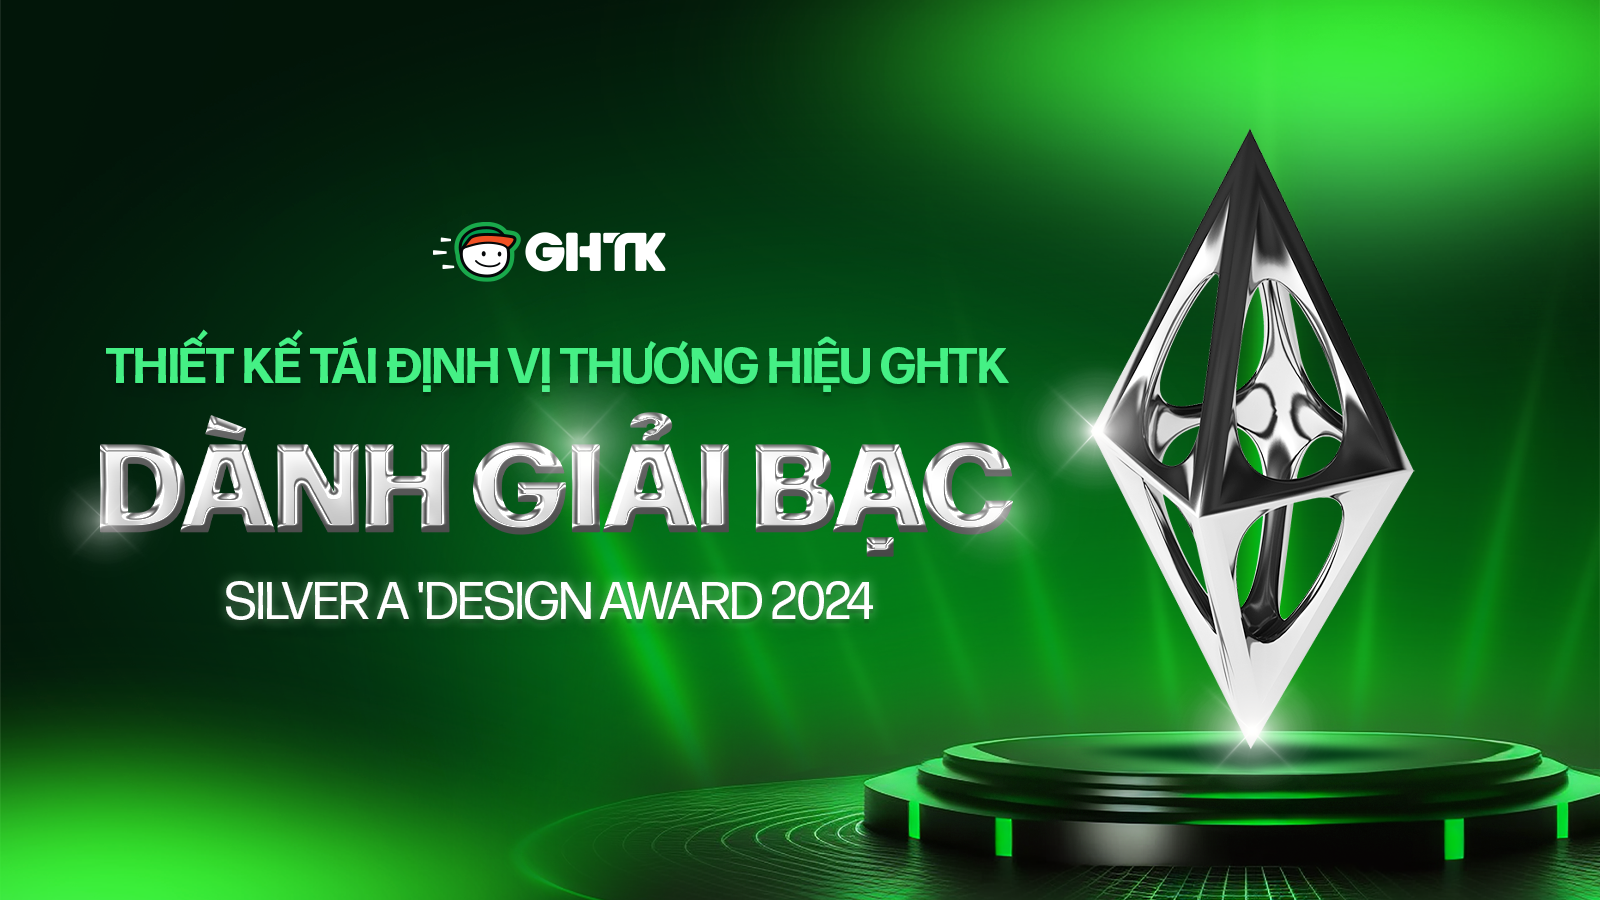 Thiết kế tái định vị thương hiệu GHTK dành giải BẠC tại cuộc thi A 'Design Award & Competition (ADAC)